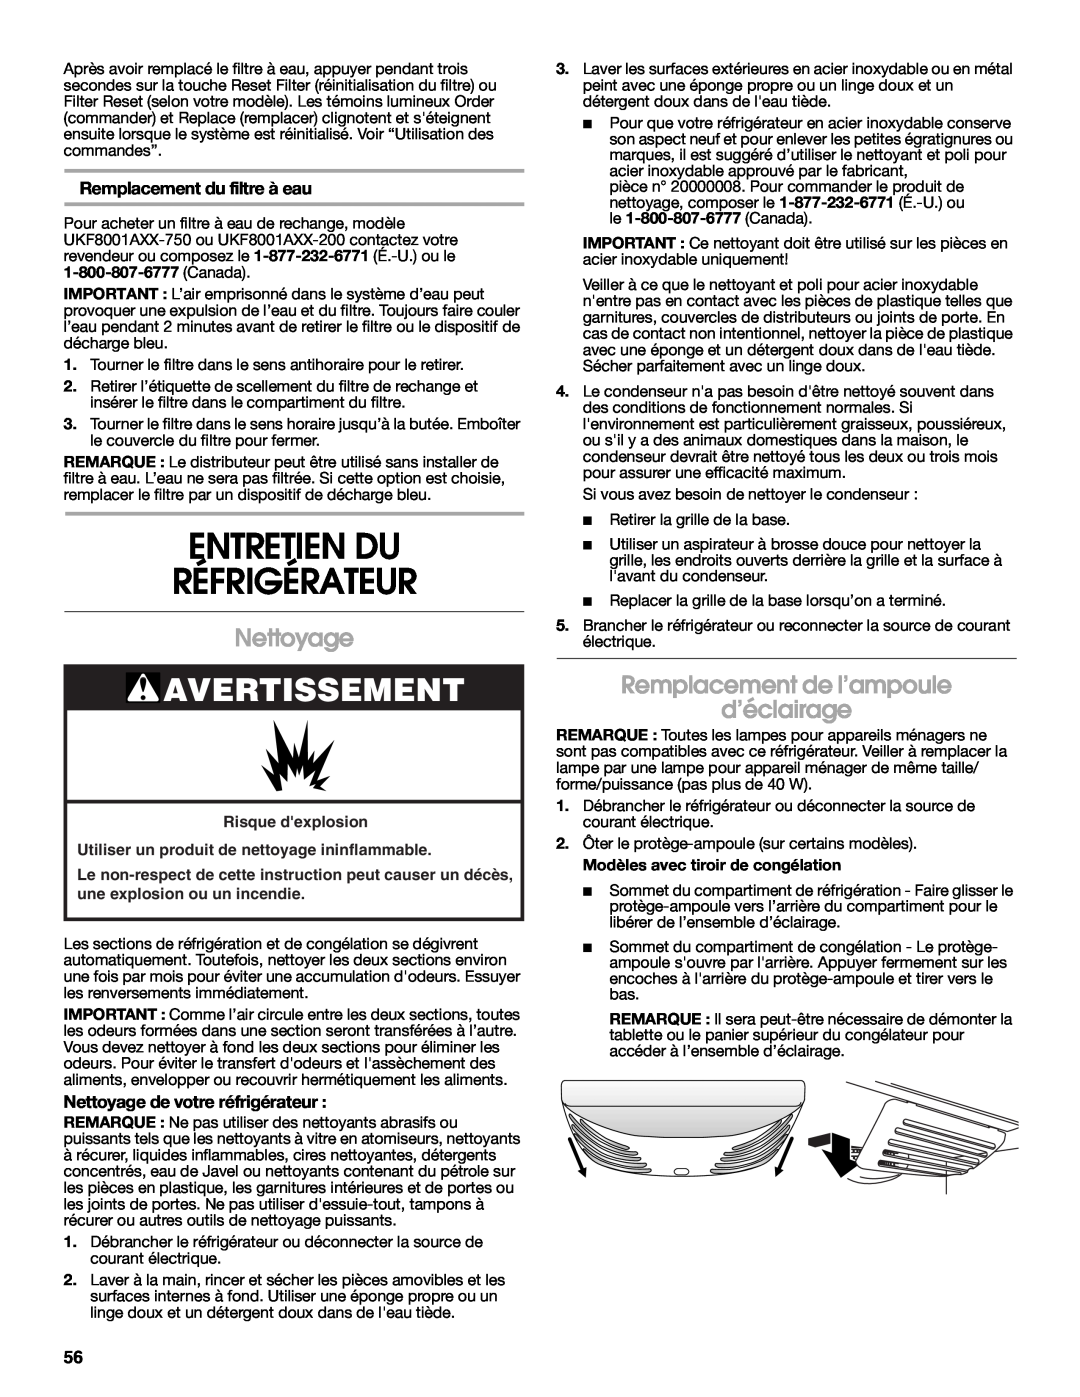 Jenn-Air JFC2089WEM Entretien Du Réfrigérateur, Nettoyage, Remplacement de l’ampoule d’éclairage, Avertissement 